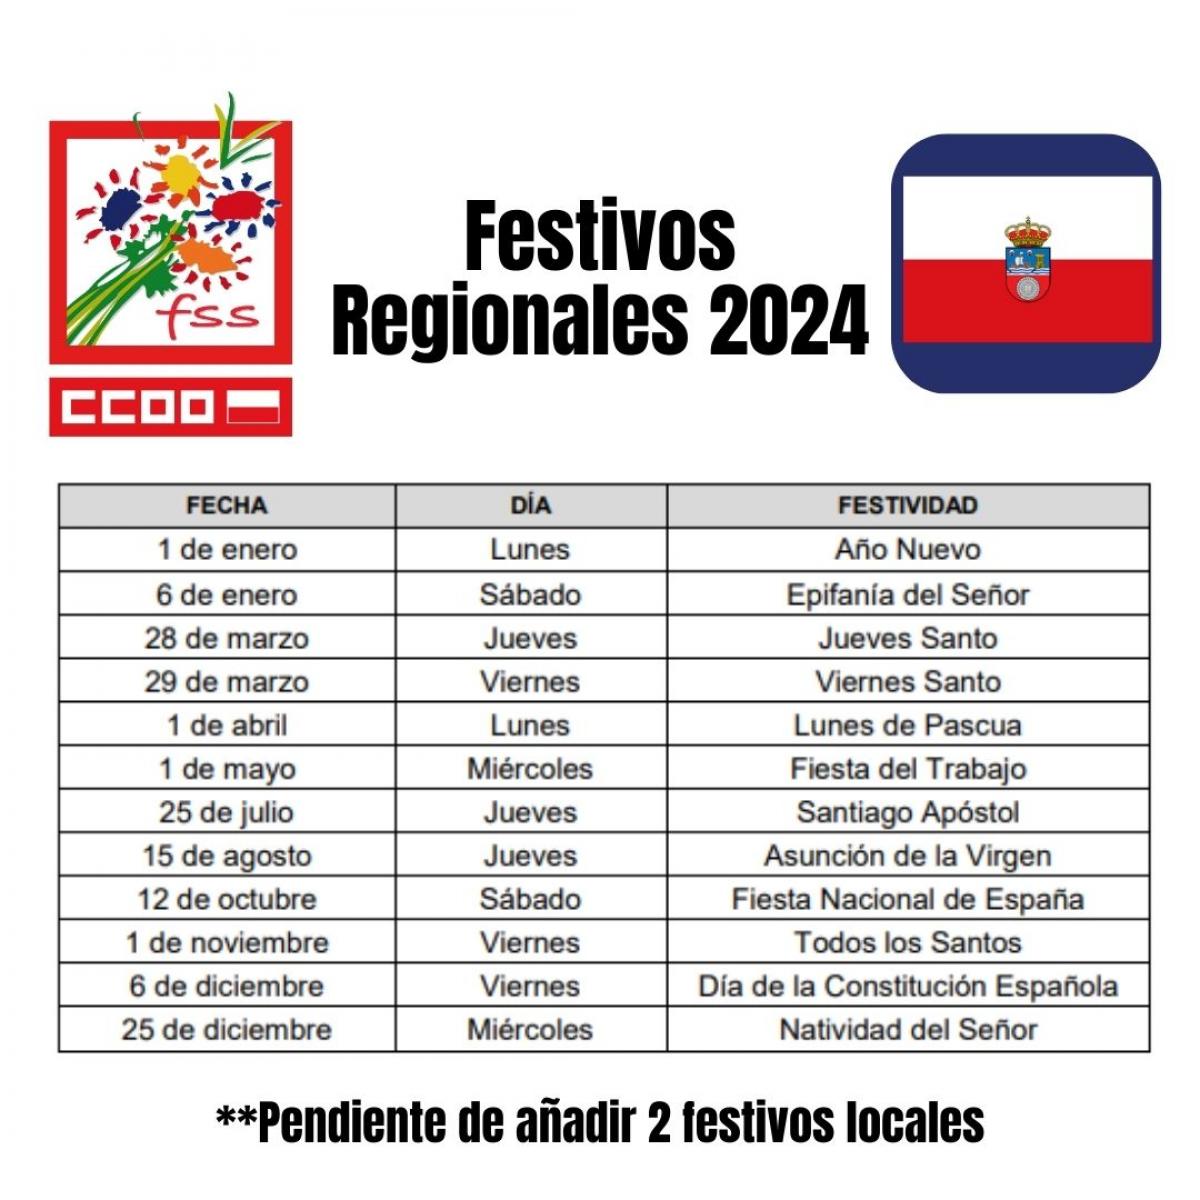 Festivos Regionales 2024